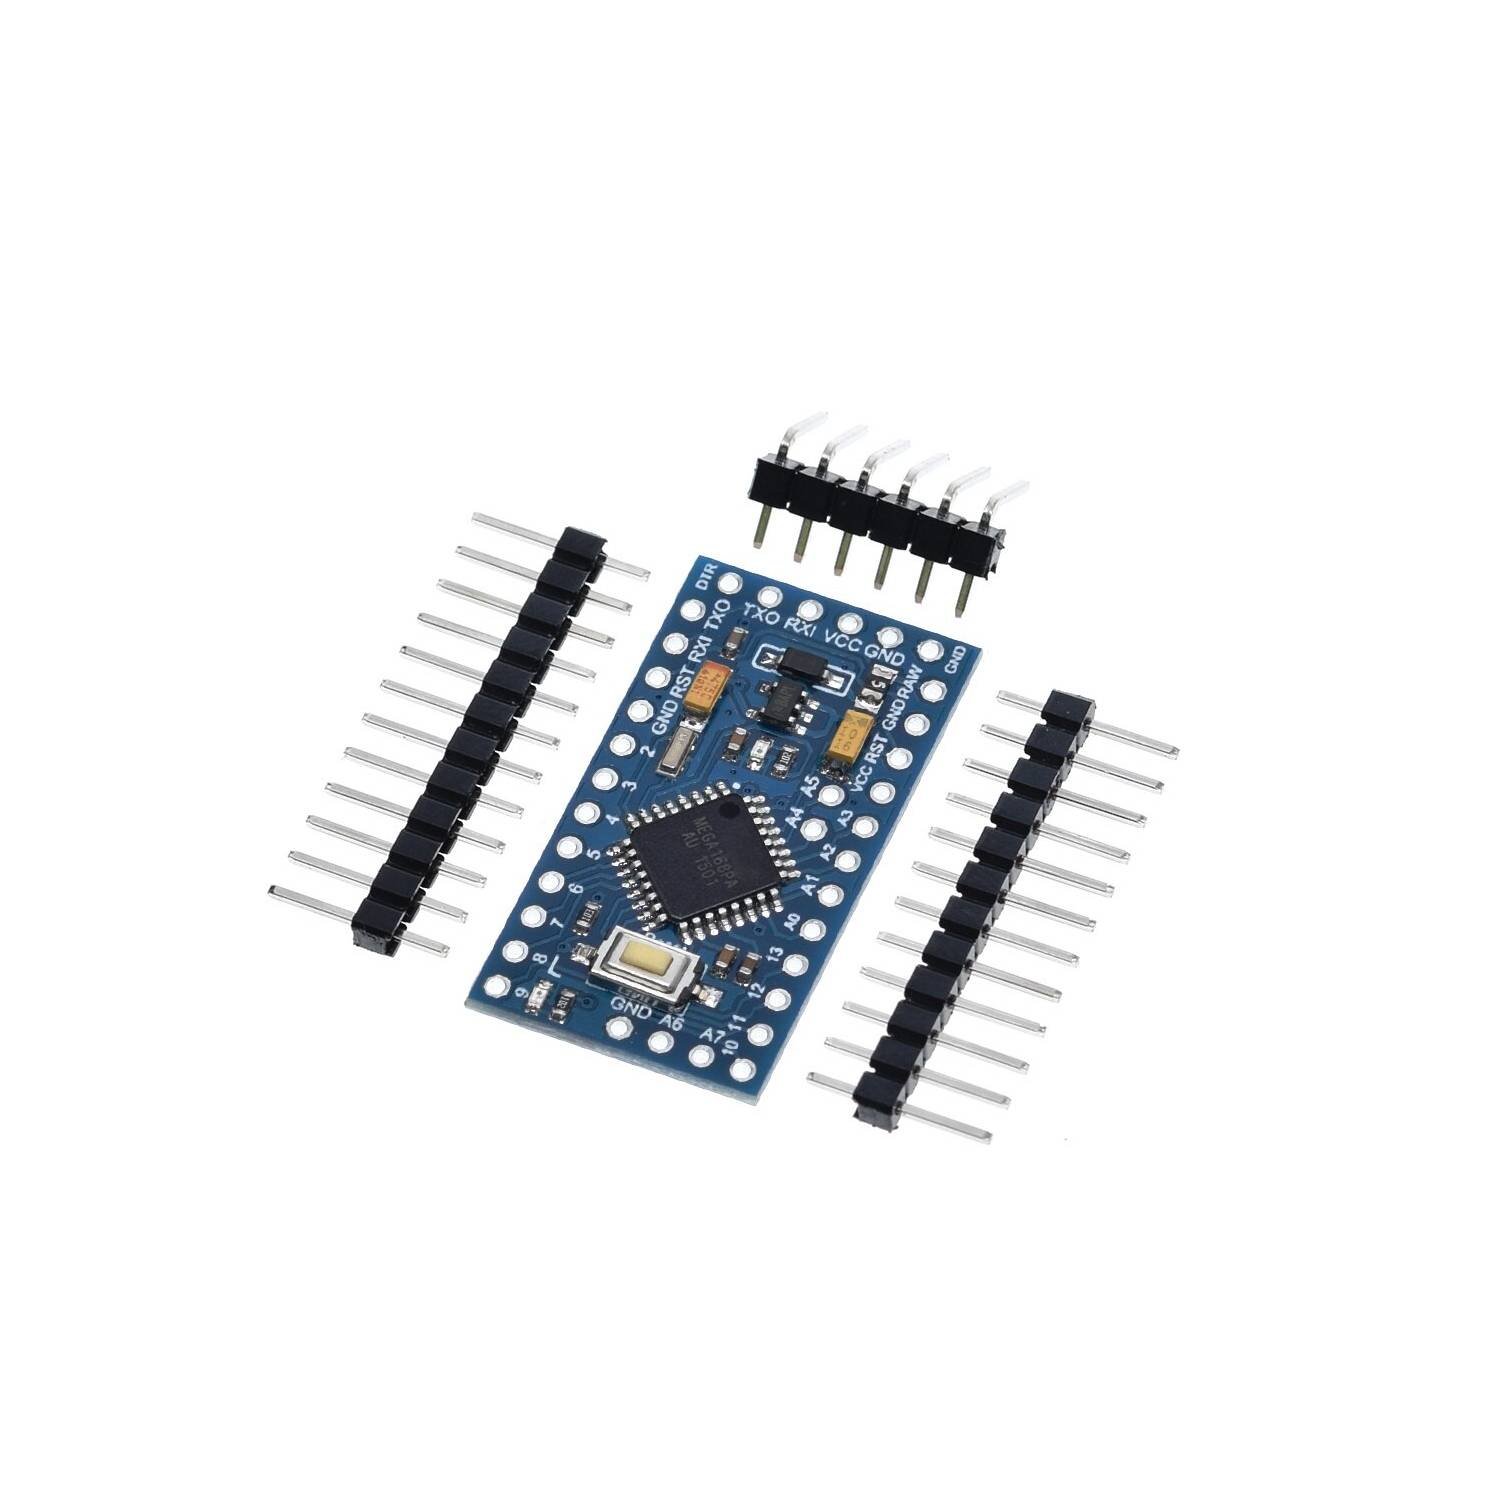 Tarjeta Desarrollo Compatible Arduino Uno Ch340 con Cable Usb - yorobotics